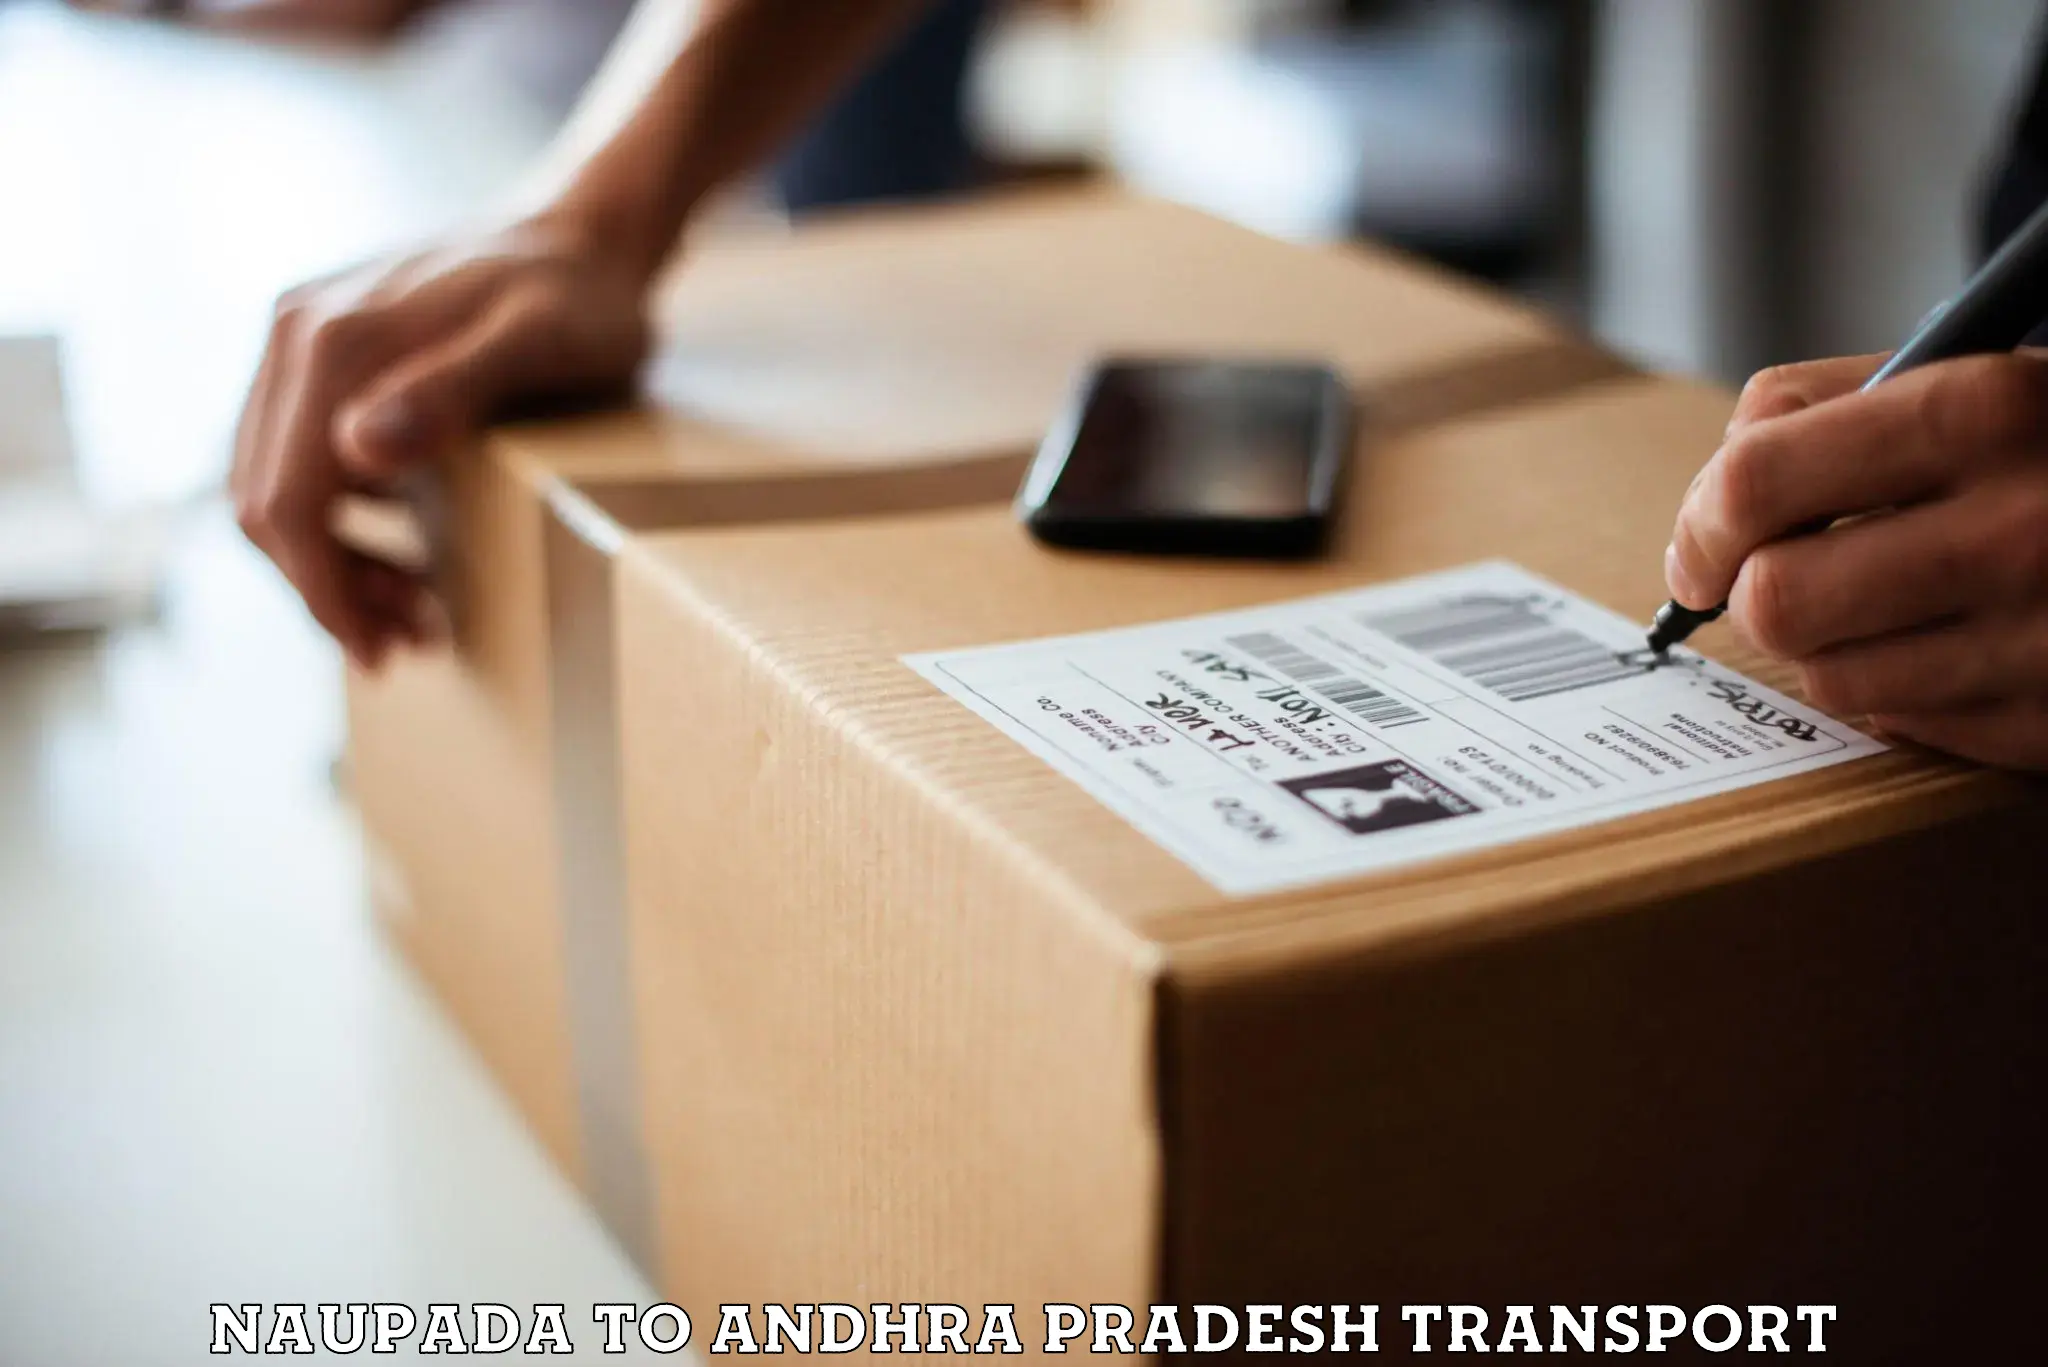 Lorry transport service Naupada to Andhra Pradesh